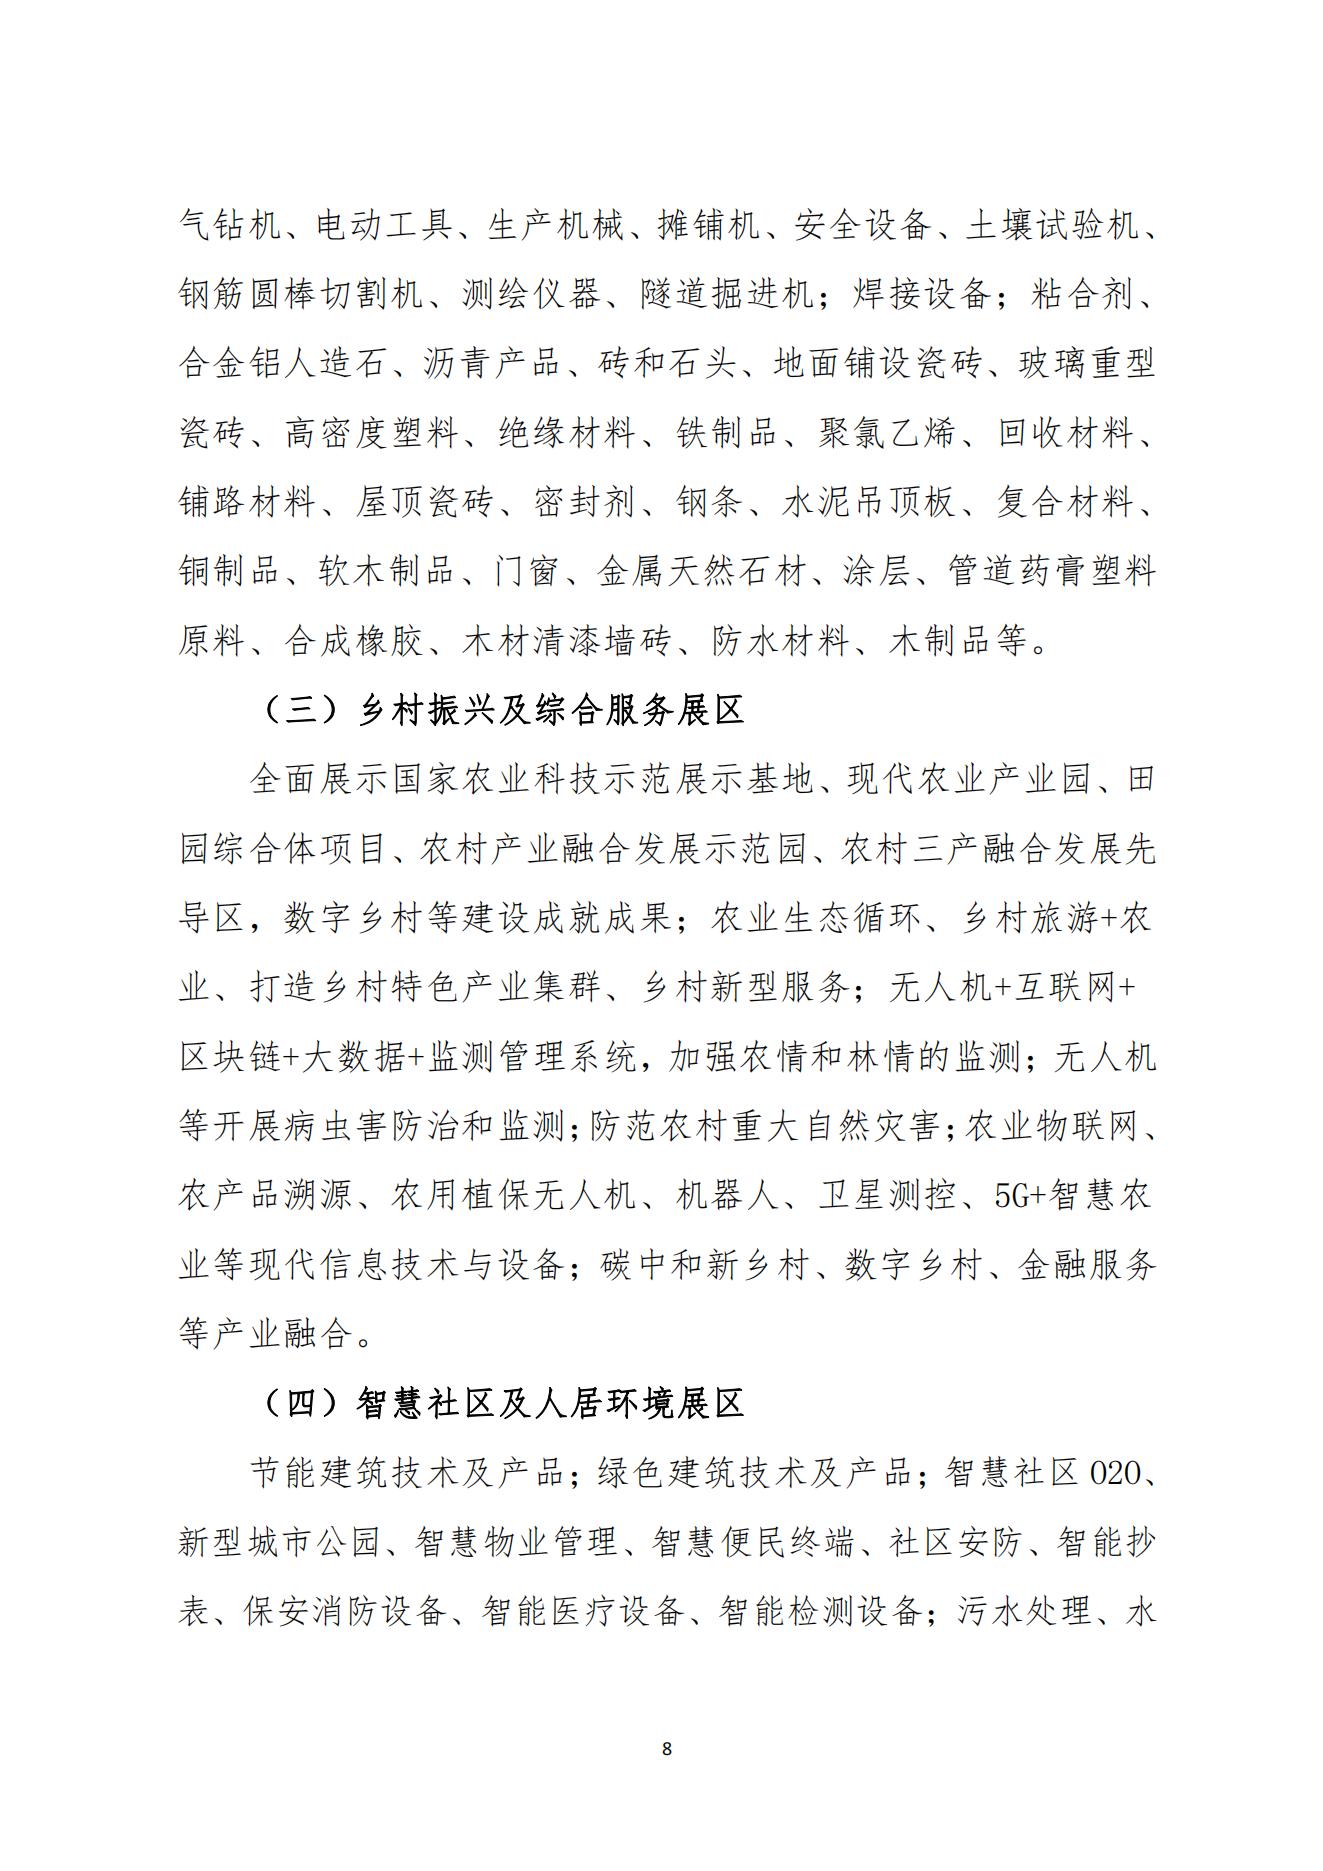 中国市政工程协会关于举办2023中国西部数字城乡发展产业博览会的通知11.9(1)_07.jpg